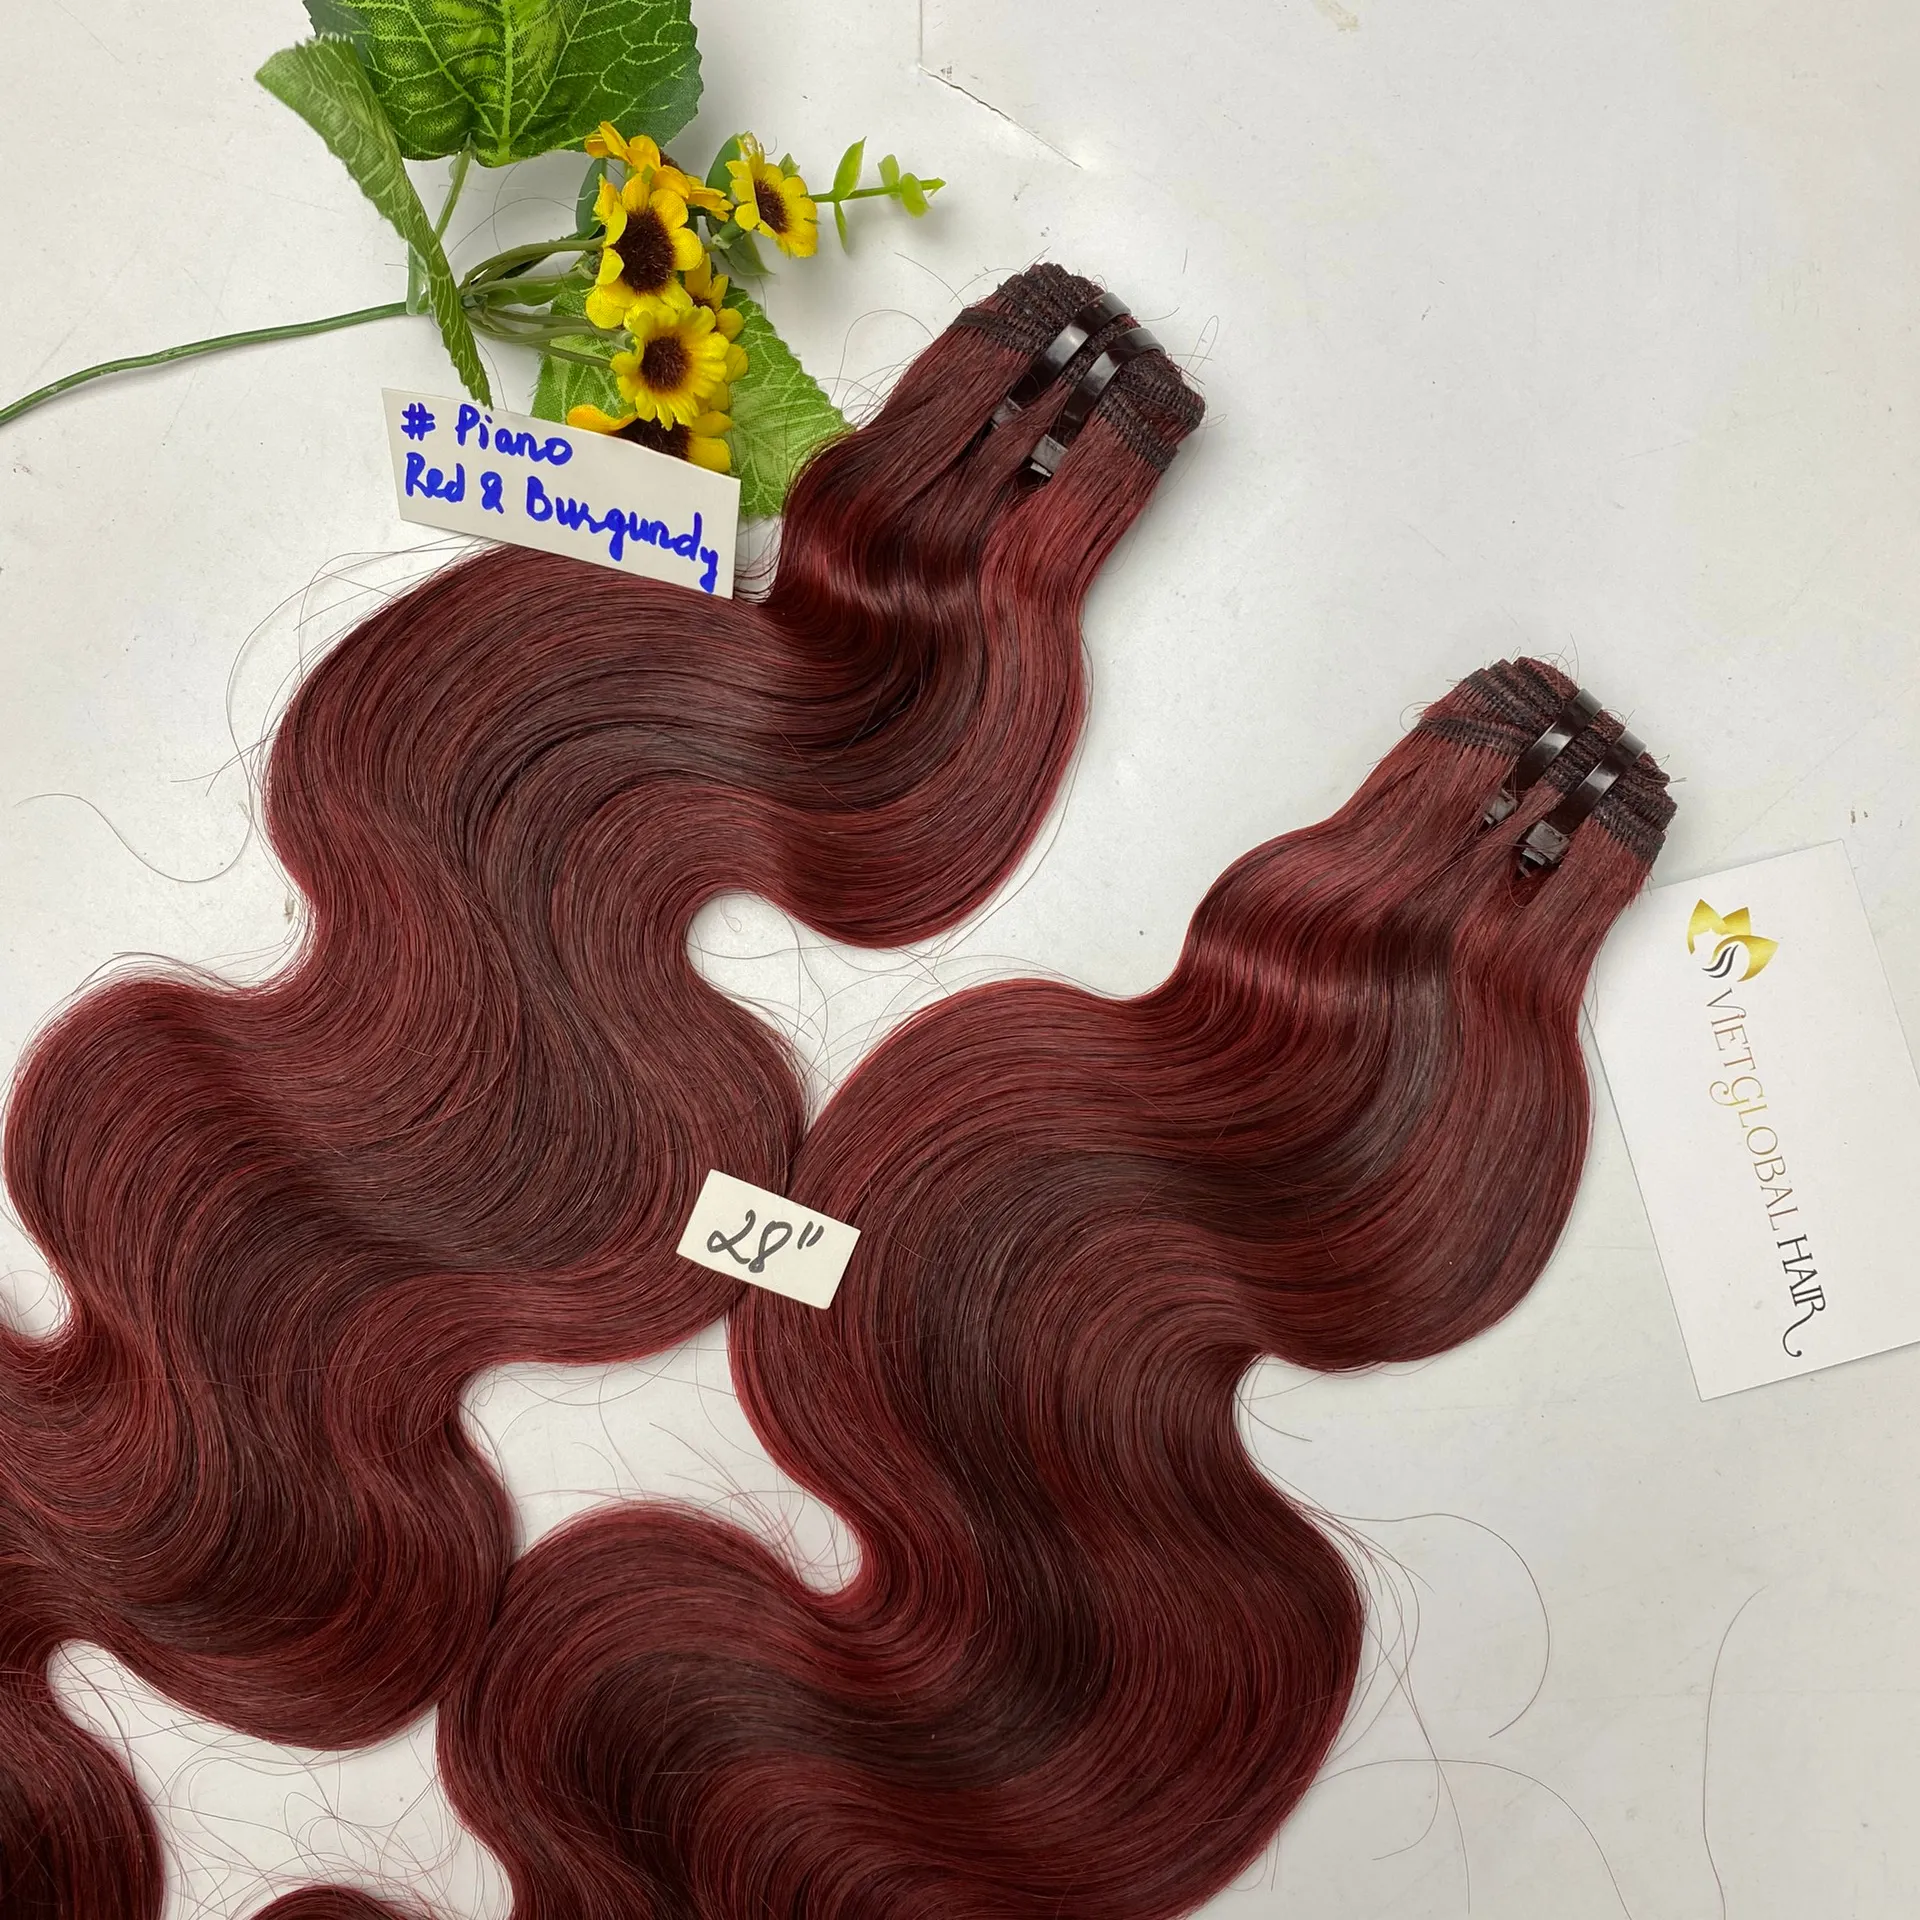 Più venduto 100% capelli umani onda del corpo vergine vietnamita cuticola capelli allineati doppia trama doppio disegnato pianoforte colore rosso bordeaux